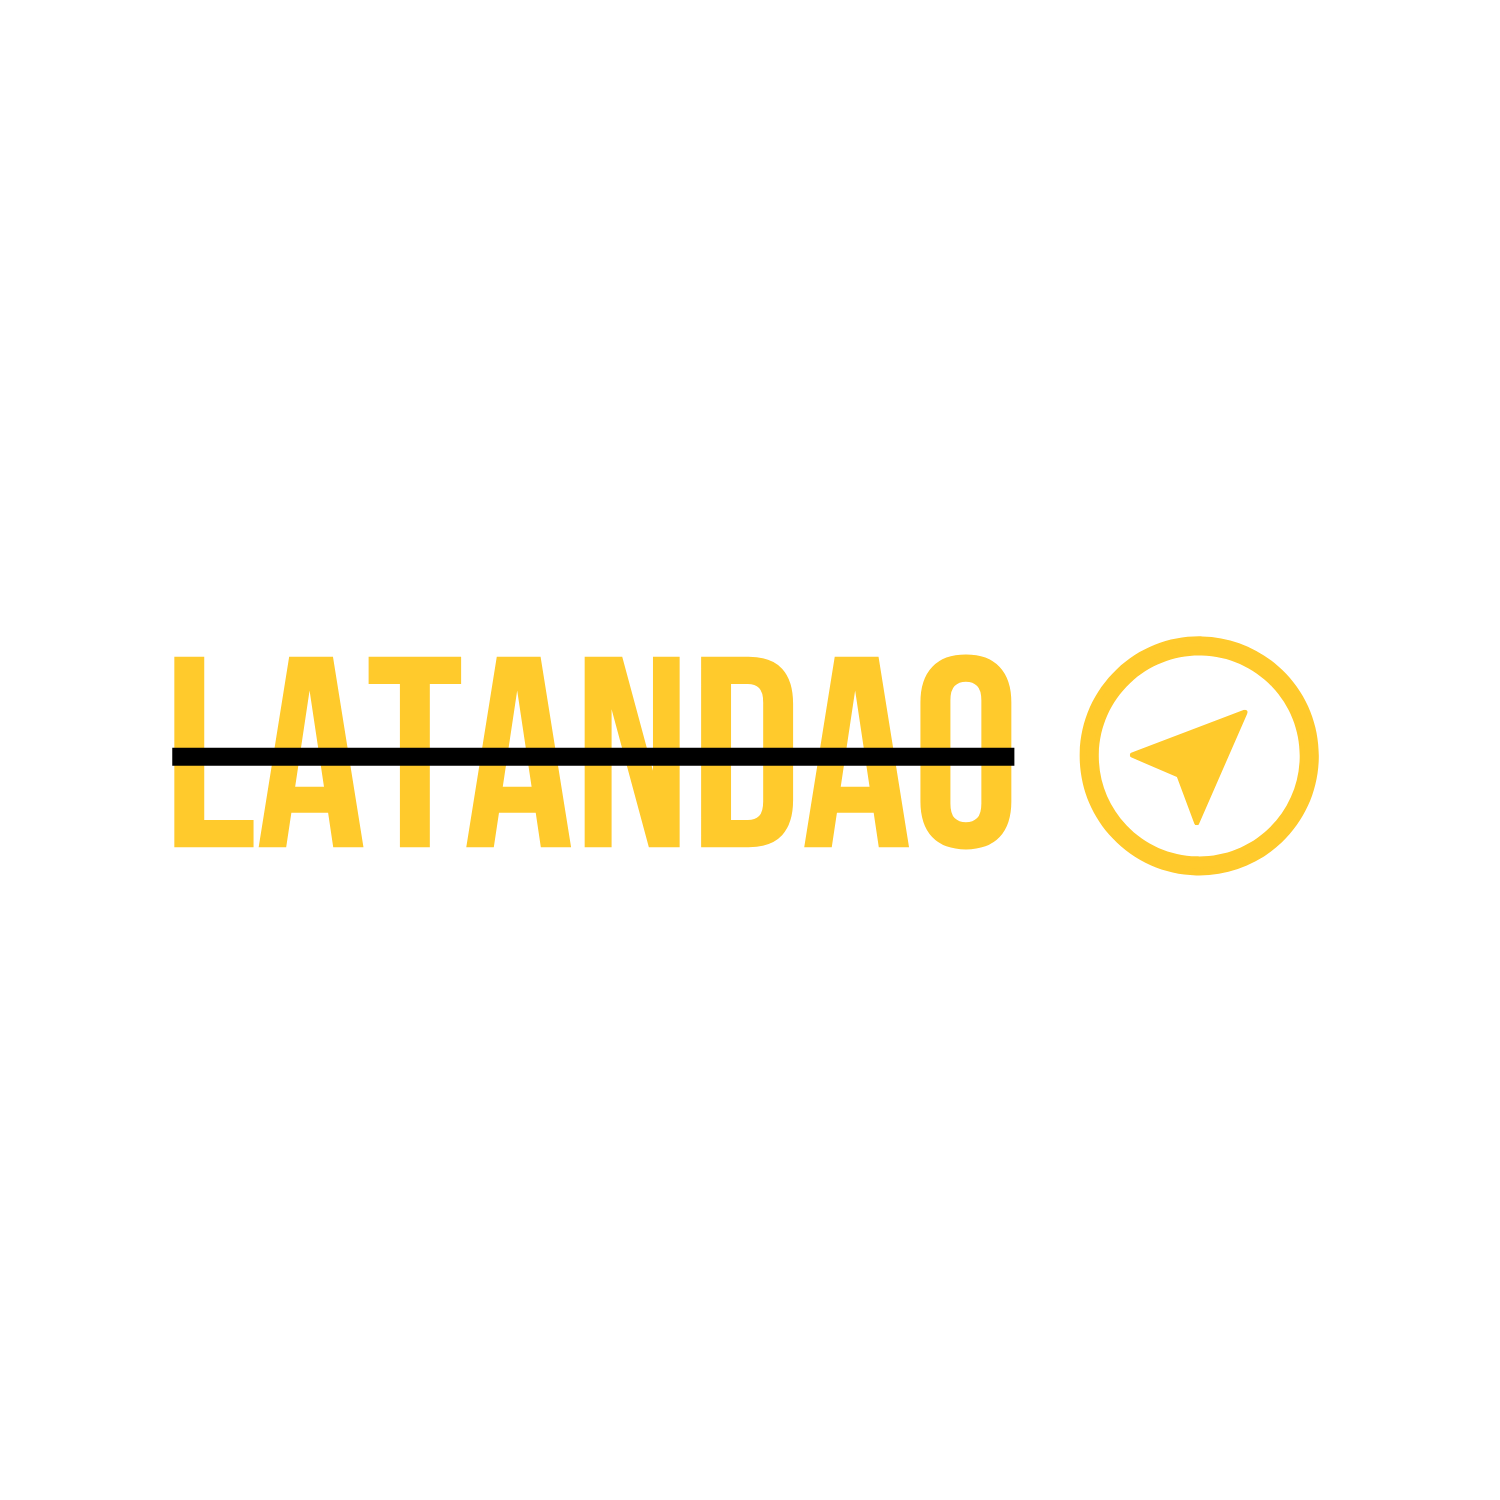 Latandao main logo